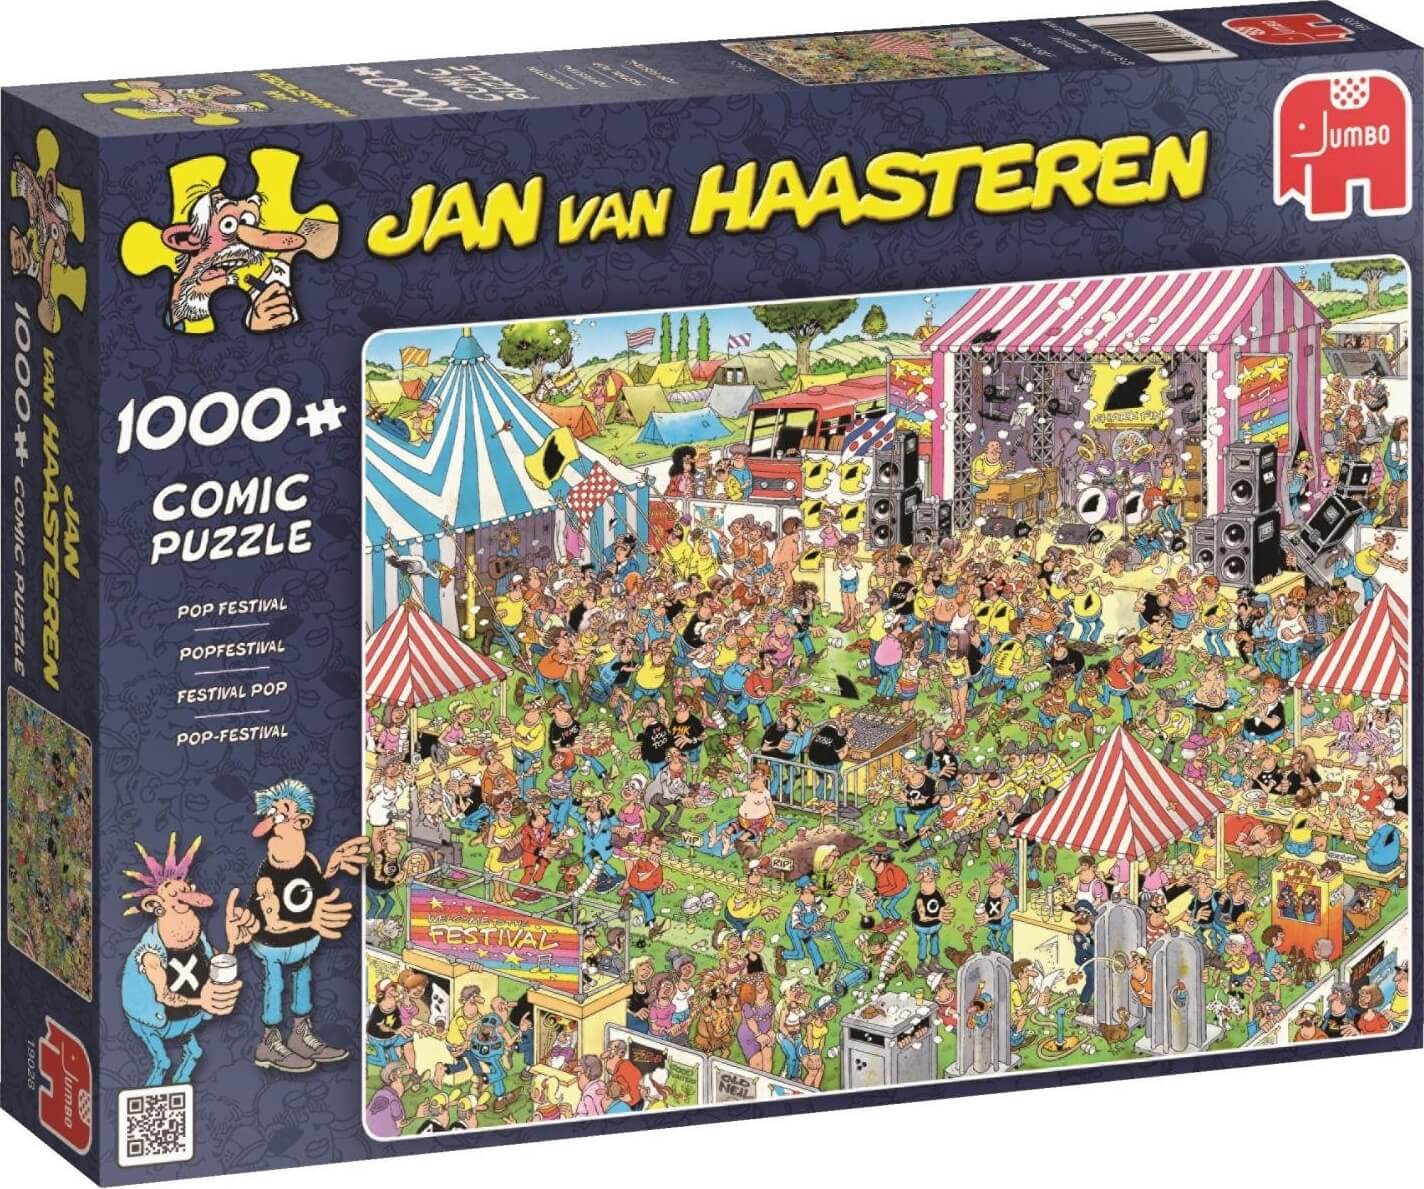 1000 Festival pop, Jan Van Haasteren ( Jumbo 19028 ) imagen b